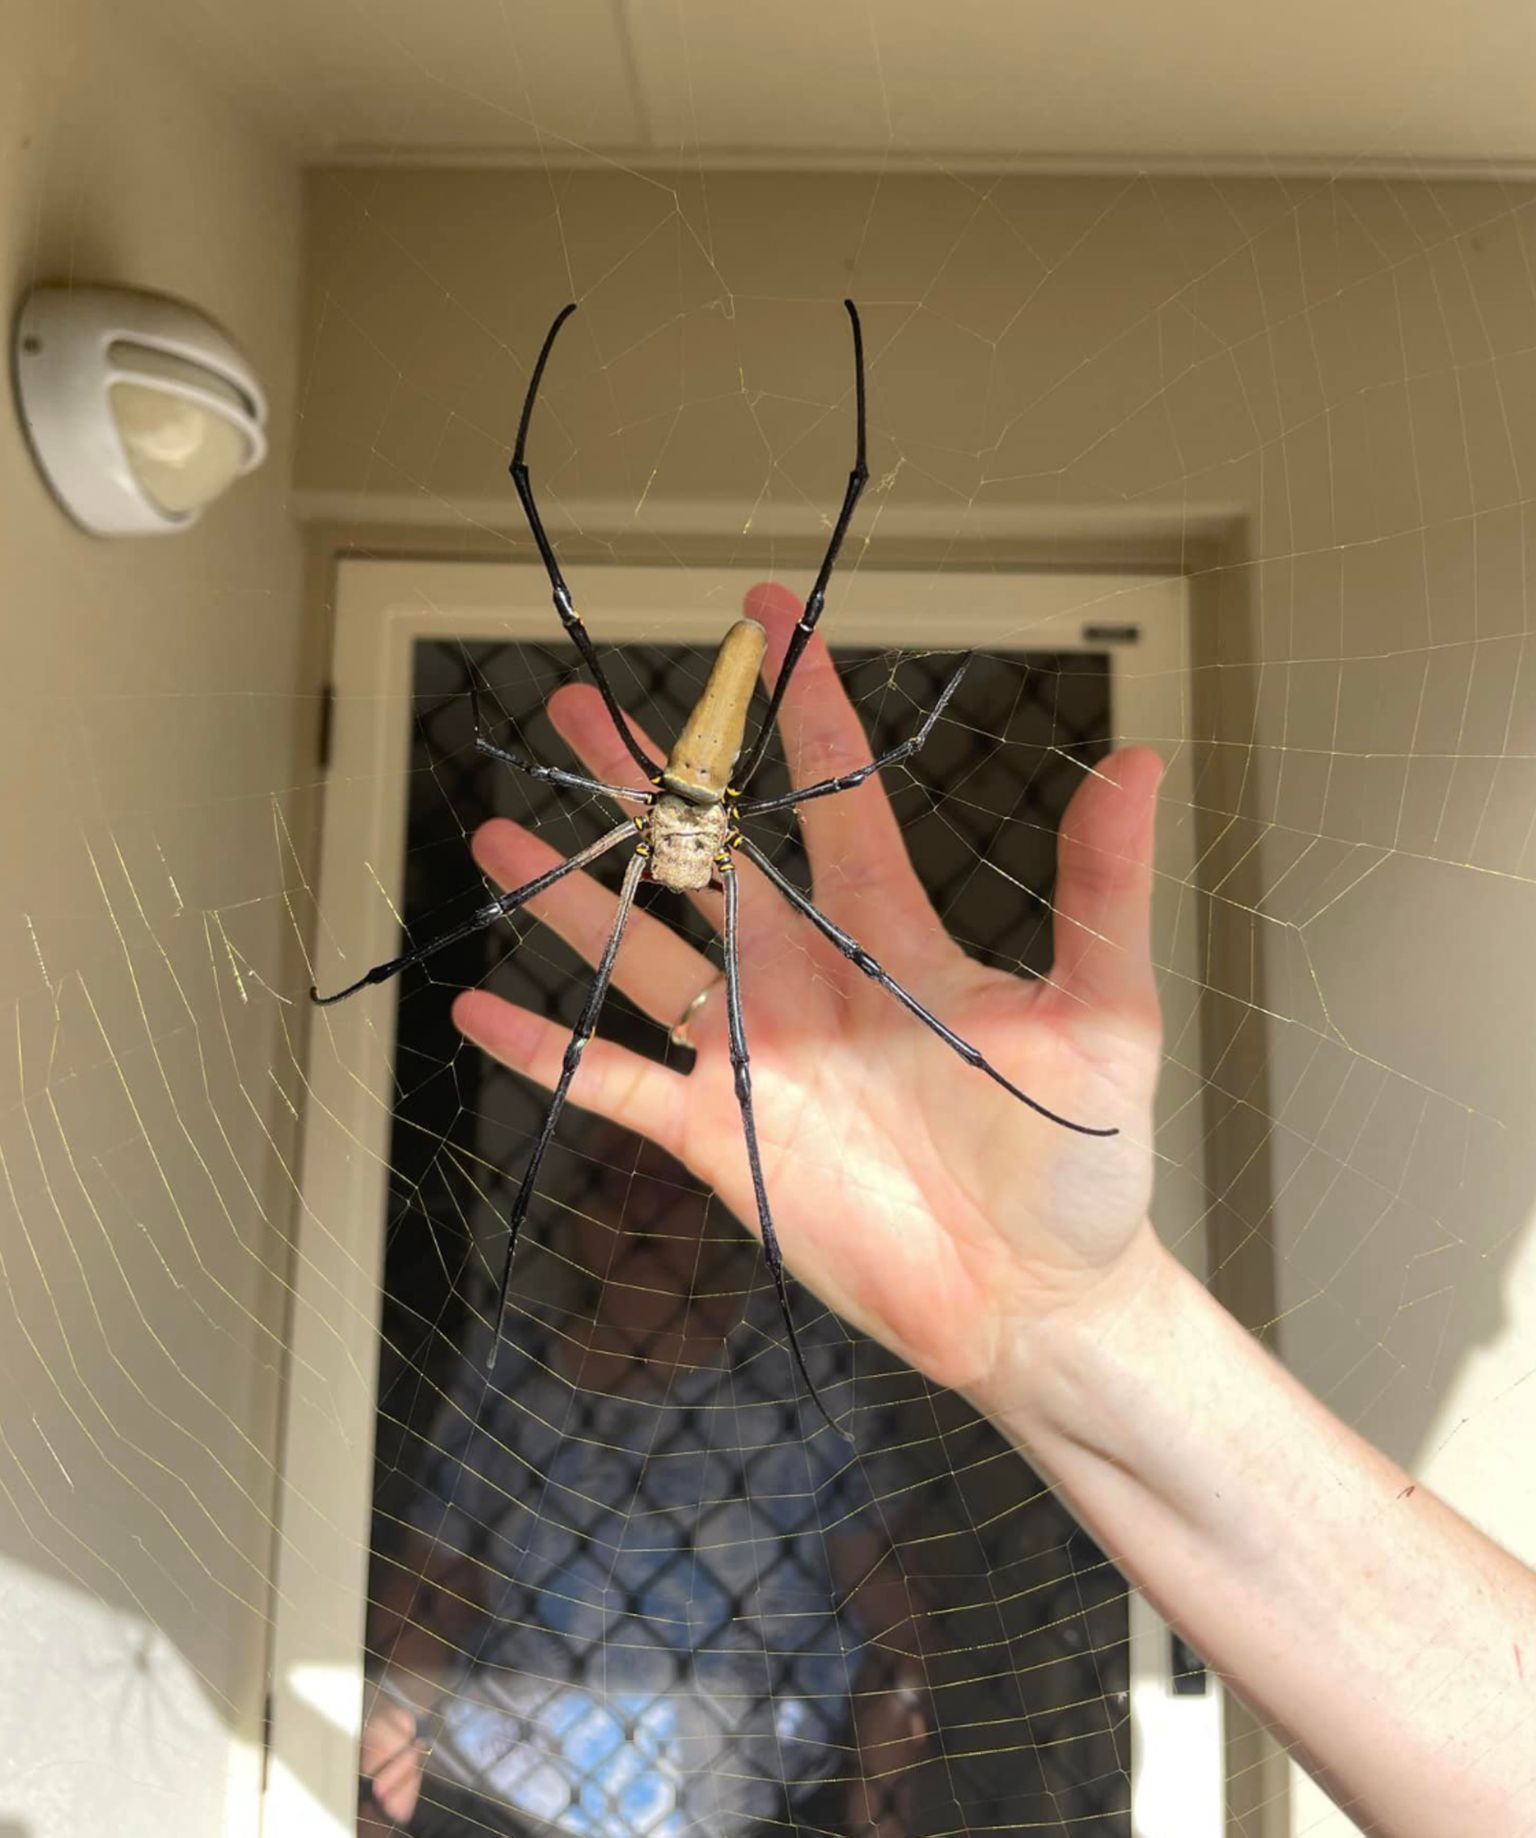 Naine võrdles ämblikku oma käega, et demonstreerida tema suurust.